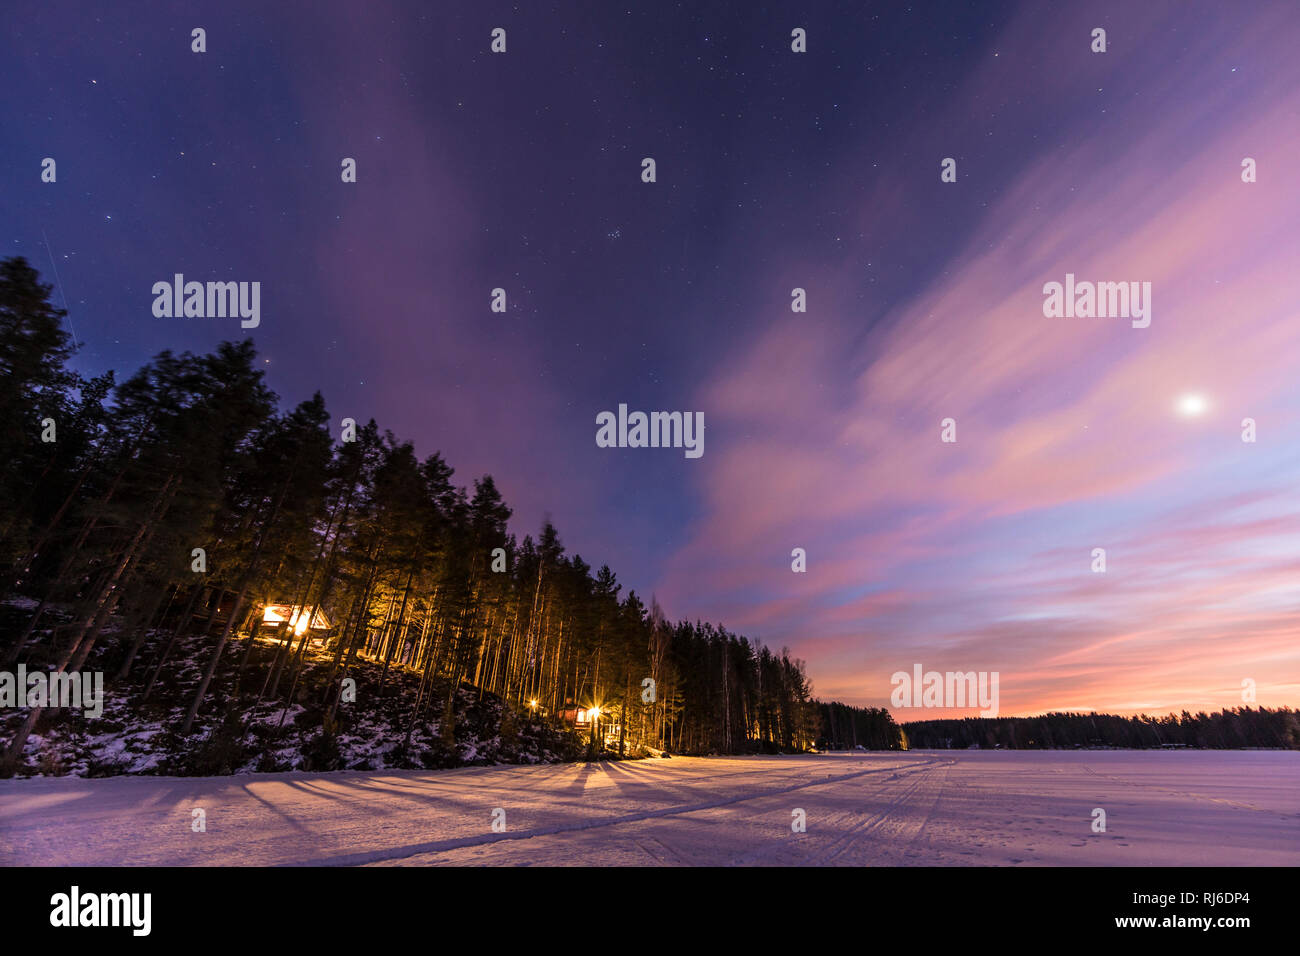 Finnland, Saimaa-Gebiet, Abendhimmel mit Bäumen und Schnee und auf voir Vénus Banque D'Images